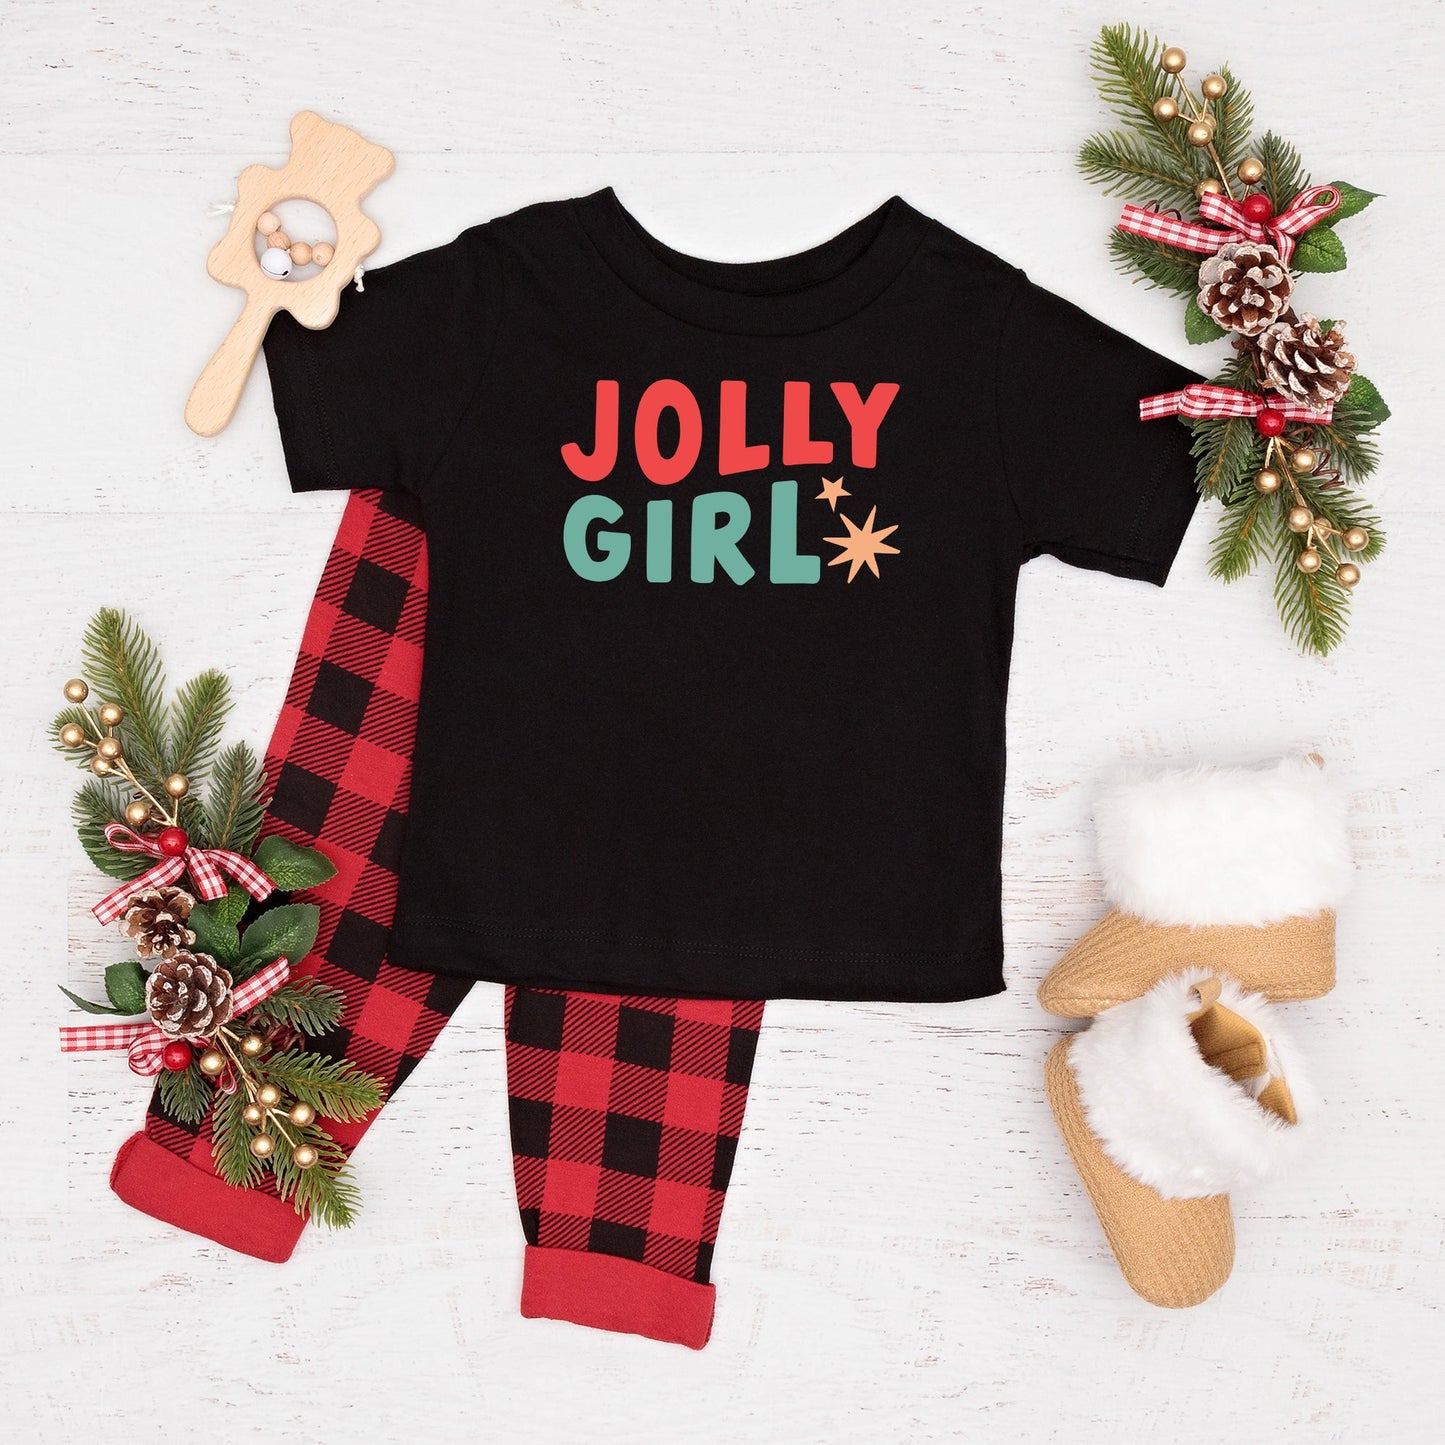 Jolly Girl Star | Toddler Short Sleeve Crew Neck